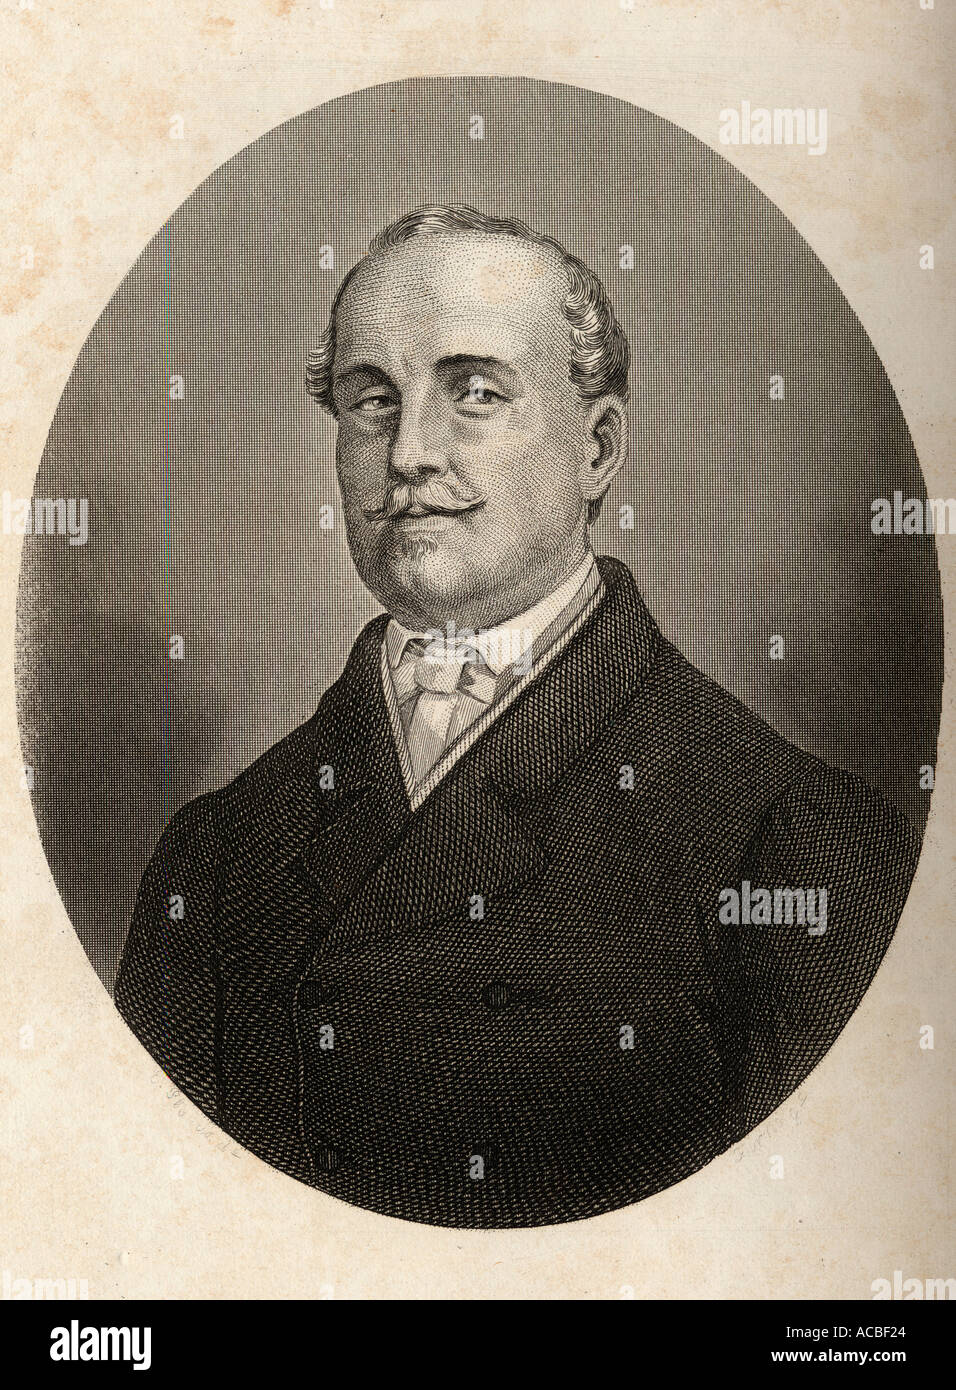 Leopoldo O'Donnell y Jorris, 1. Herzog von Tetuan, 1 Graf von Lucena, 1st Viscount von Aliaga, 1809 - 1867. Spanischen General und Staatsmann. Stockfoto